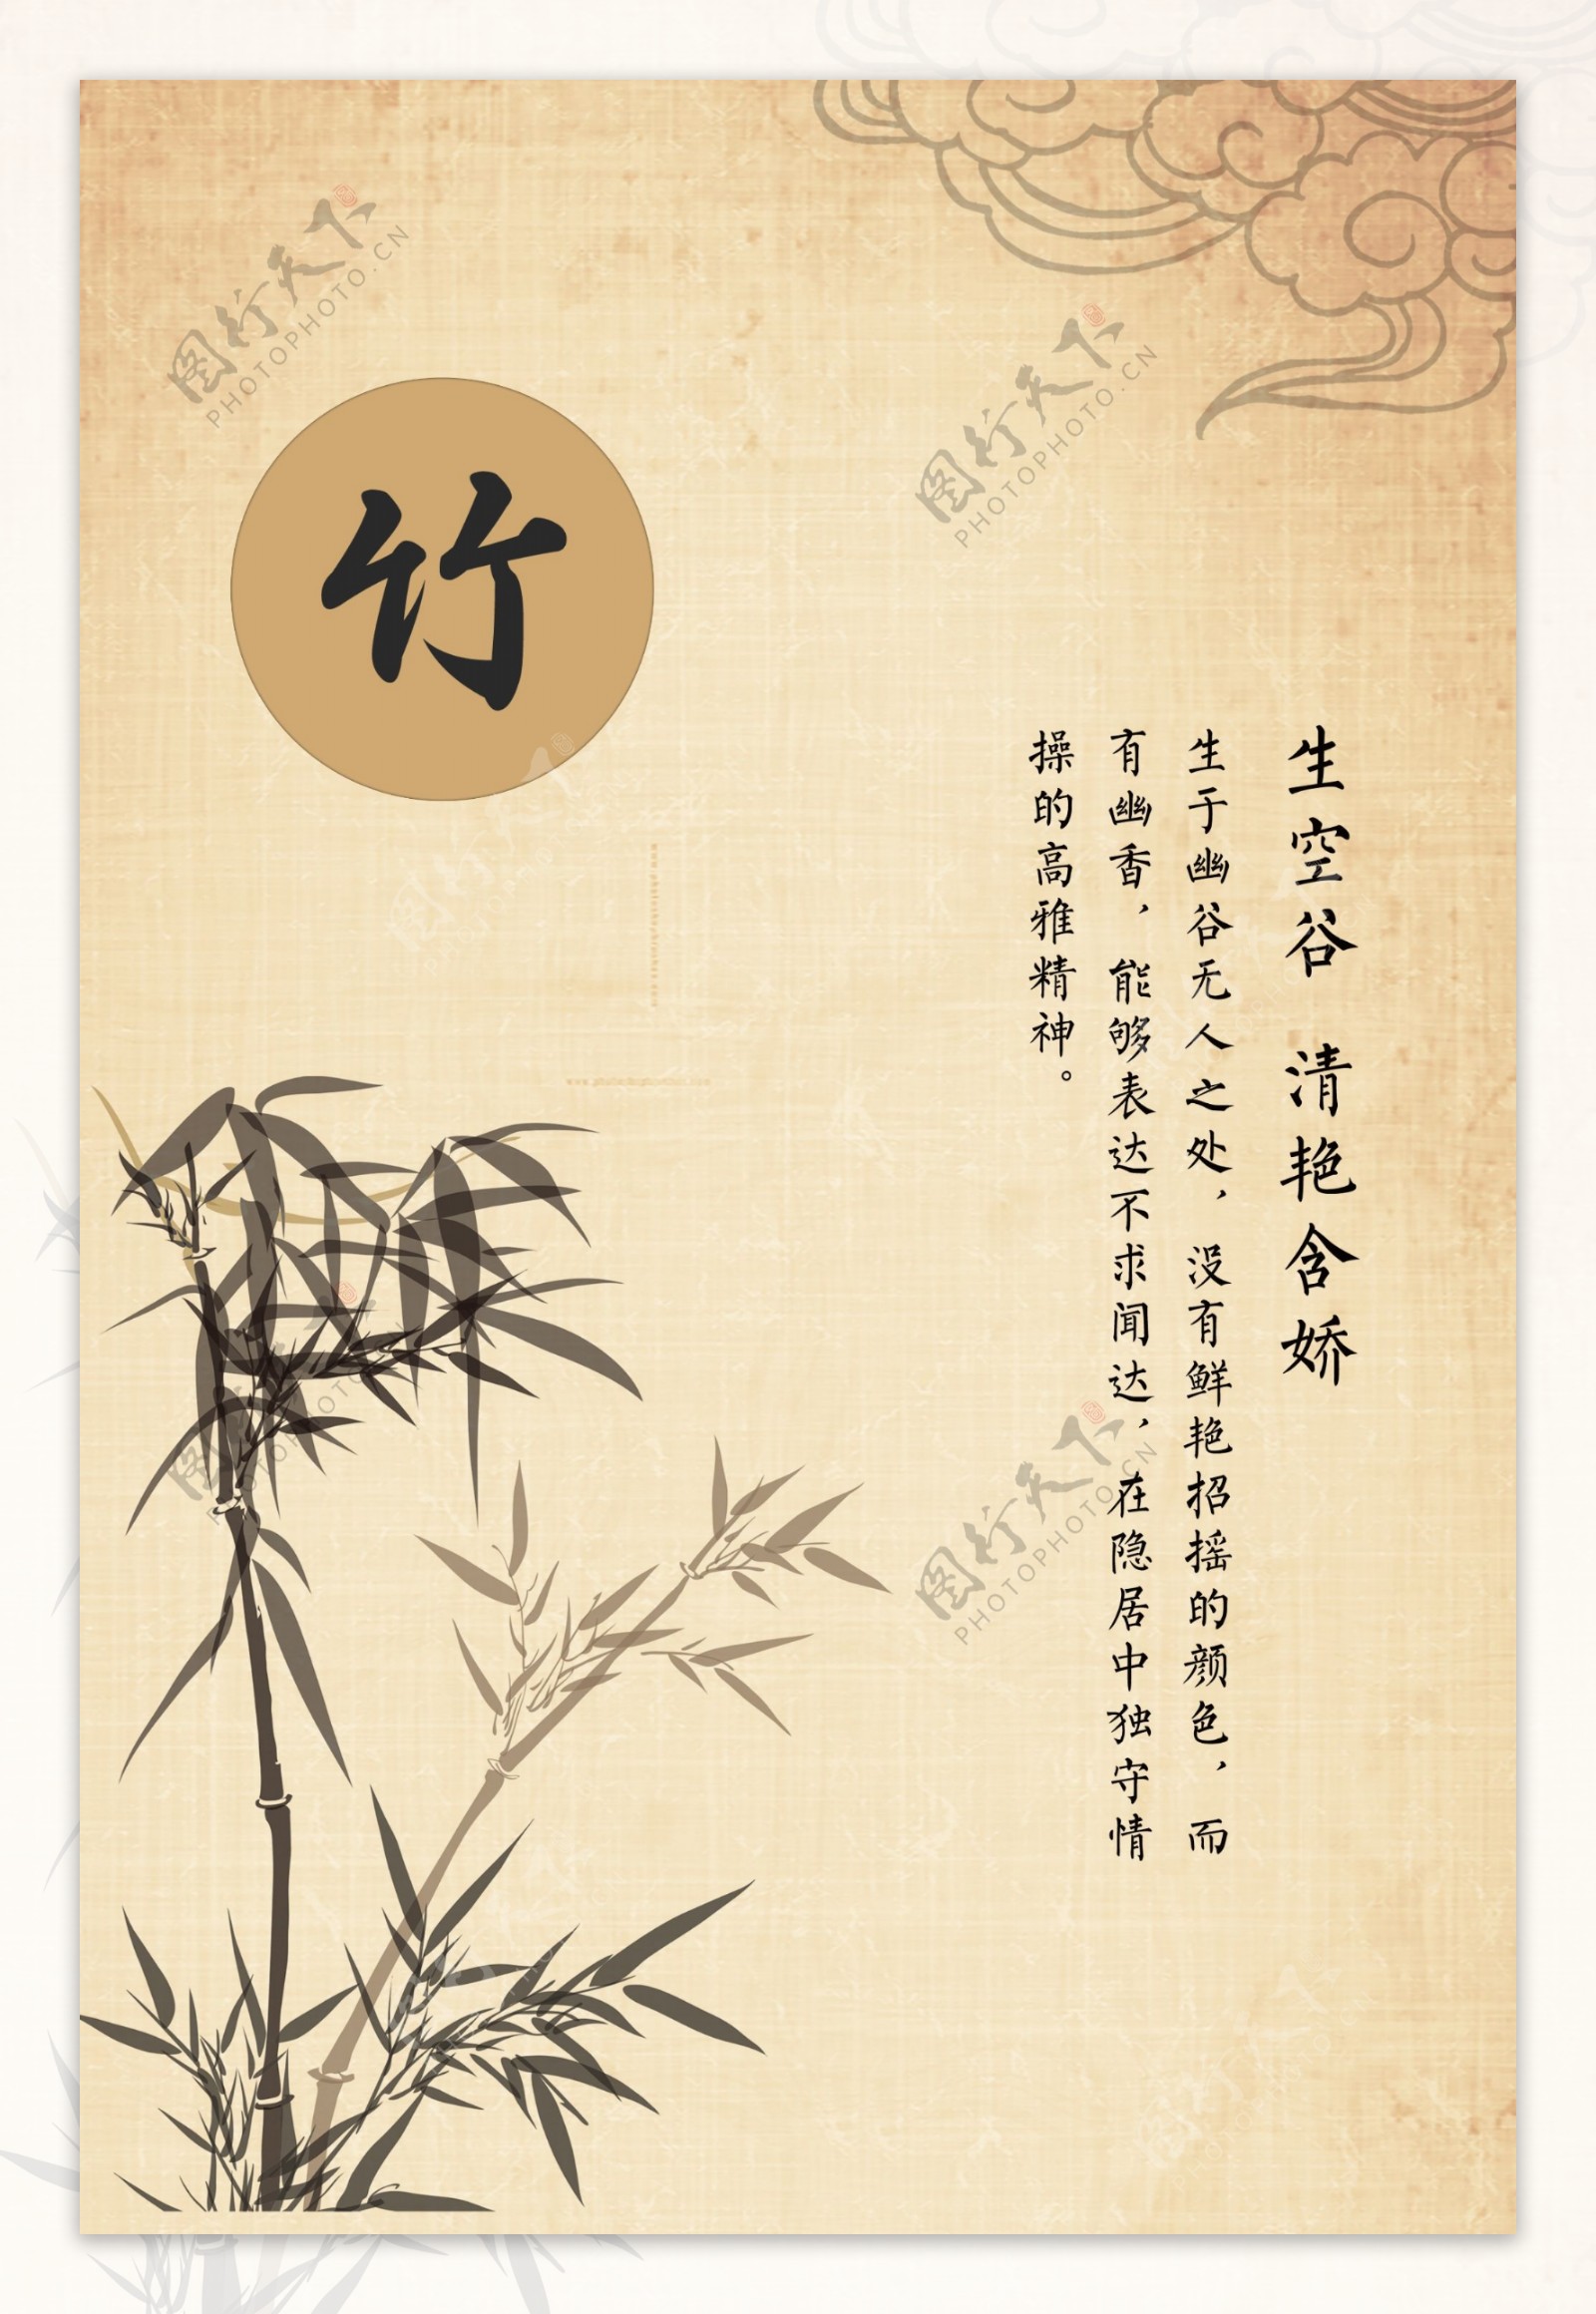 竹子中国风海报素材